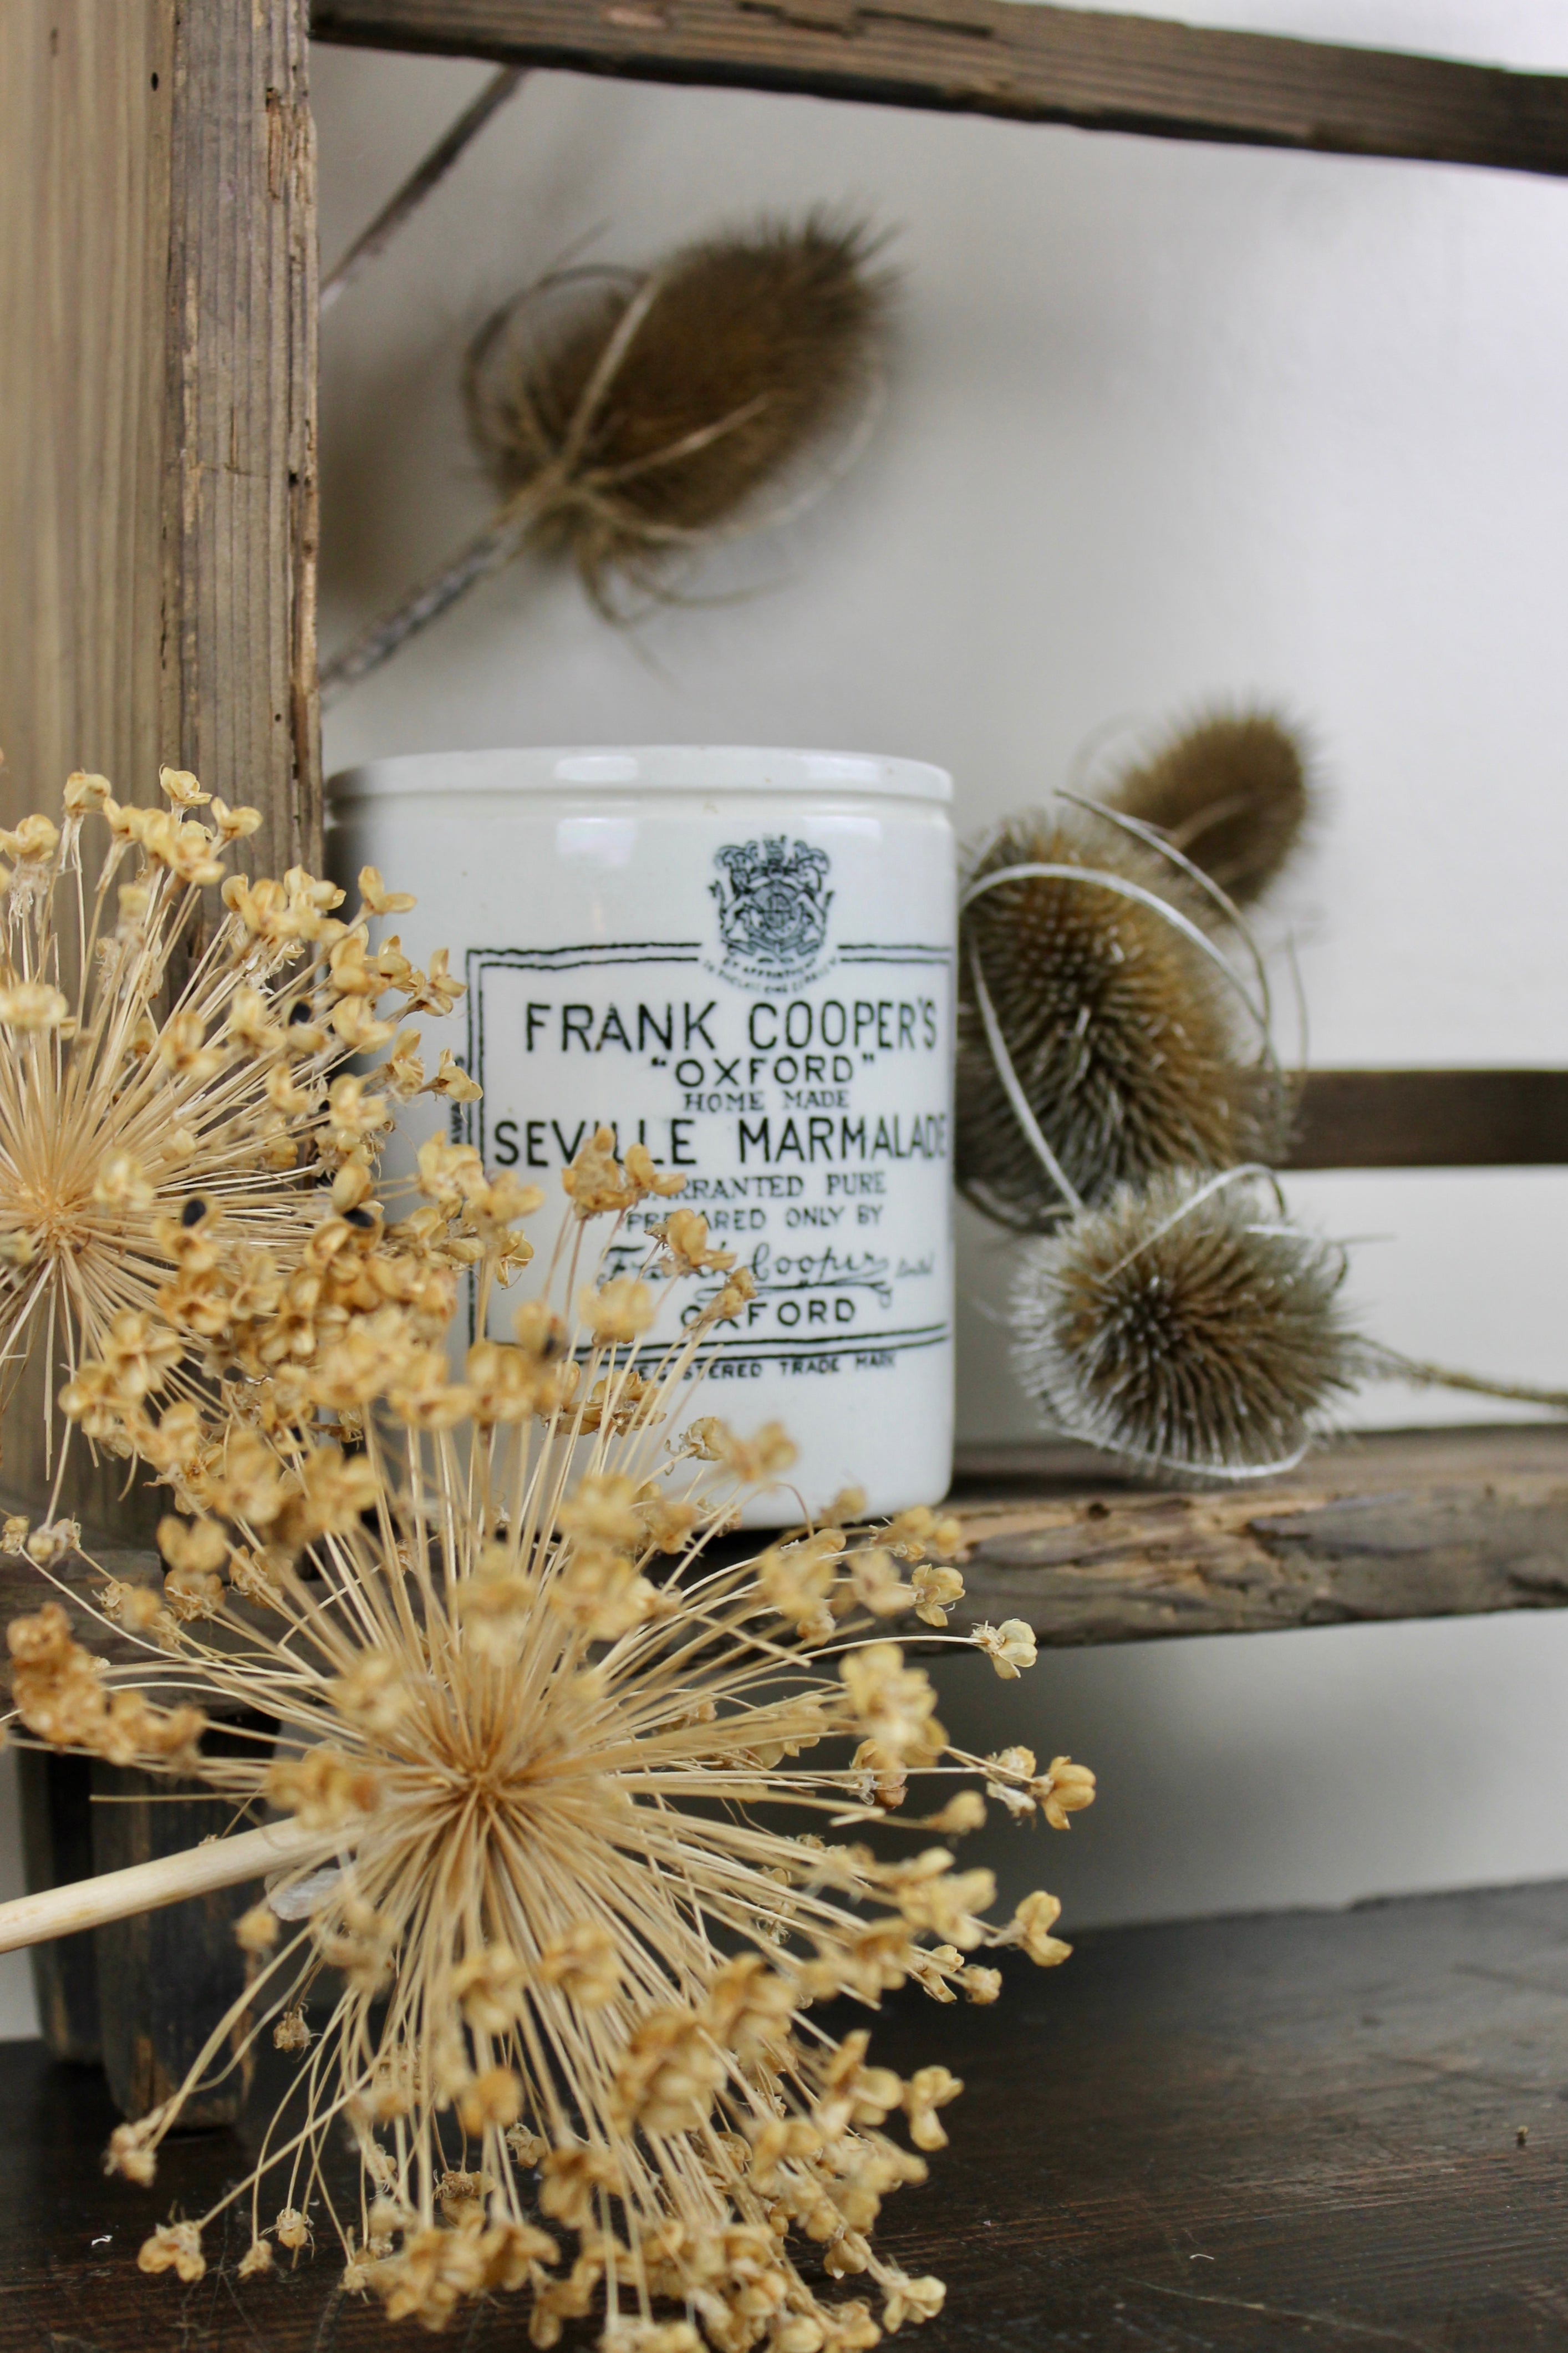 Rare Frank Cooper's Marmalade Pot 1lb